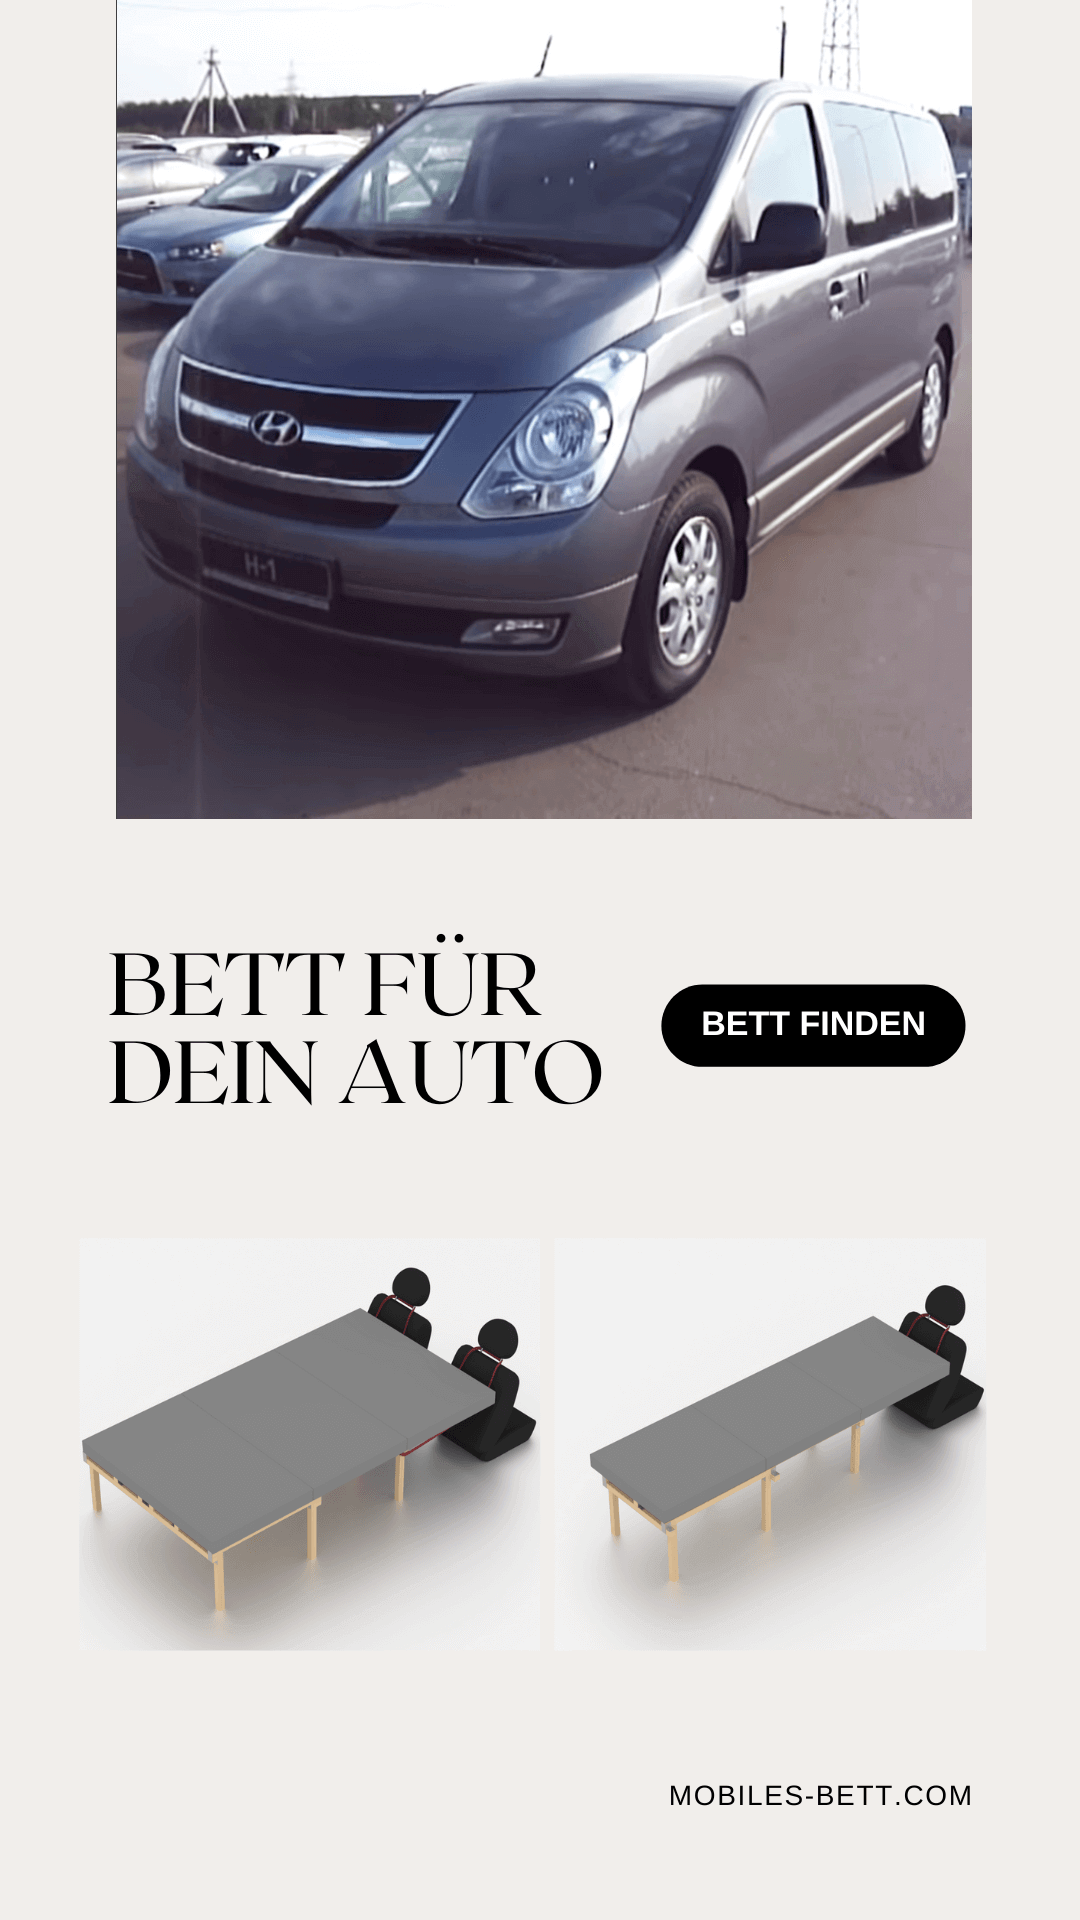 Bett für Hyundai H-1 selbst bauen - Anleitung für Einzel-, Doppel- und Kombi-Bett - becomePro